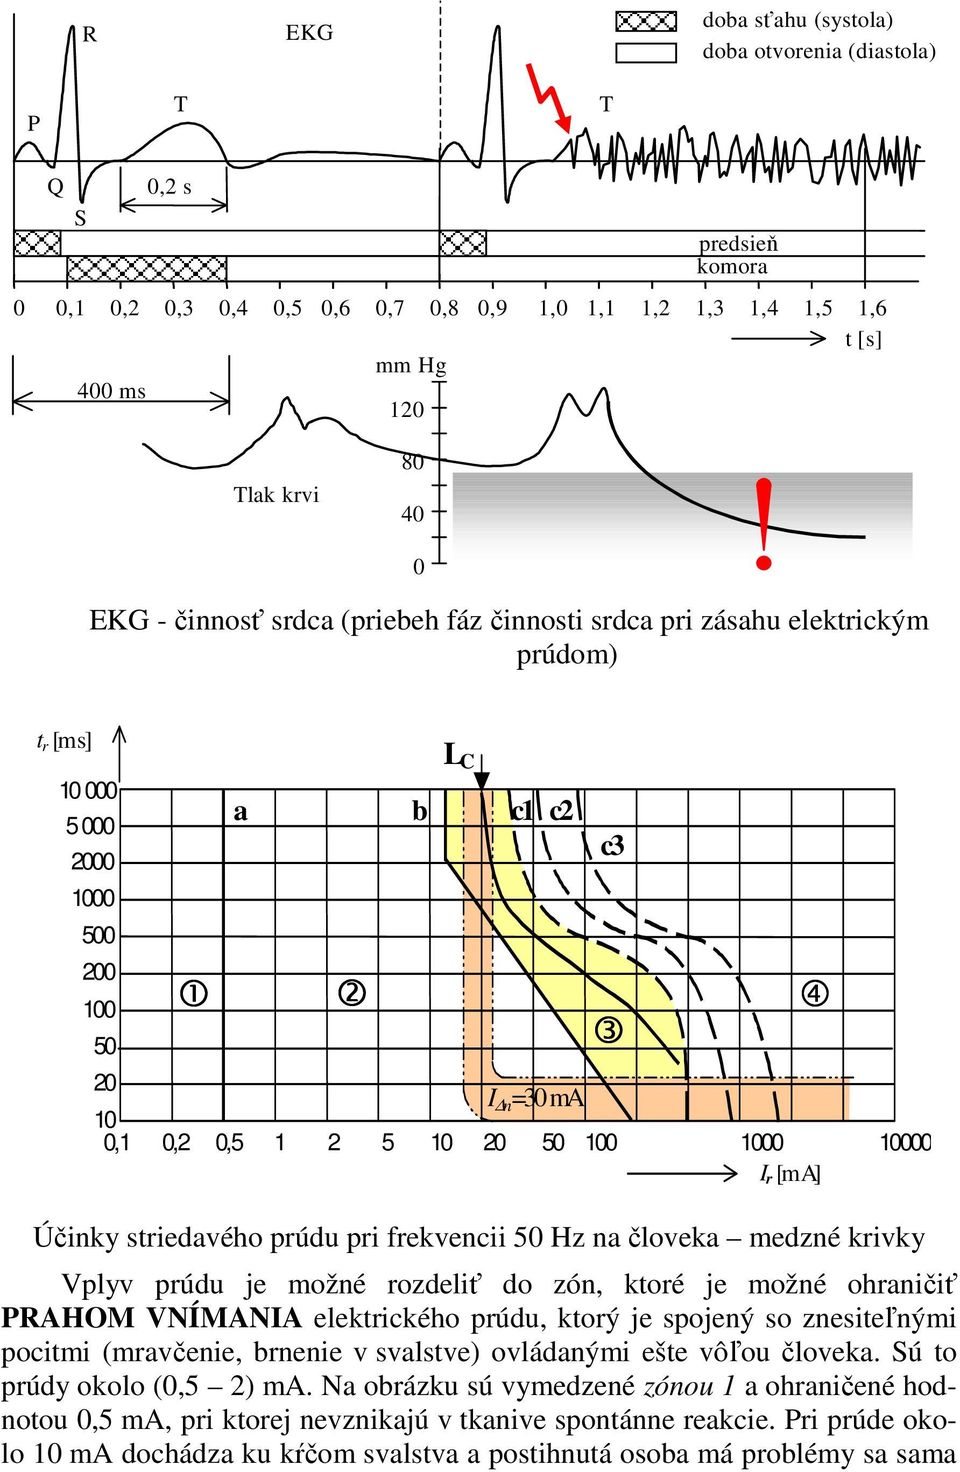 [m A] Účinky striedavého prúdu pri frekvencii 50 Hz na človeka medzné krivky Vplyv prúdu je možné rozdeliť do zón, ktoré je možné ohraničiť PRAHOM VNÍMANIA elektrického prúdu, ktorý je spojený so